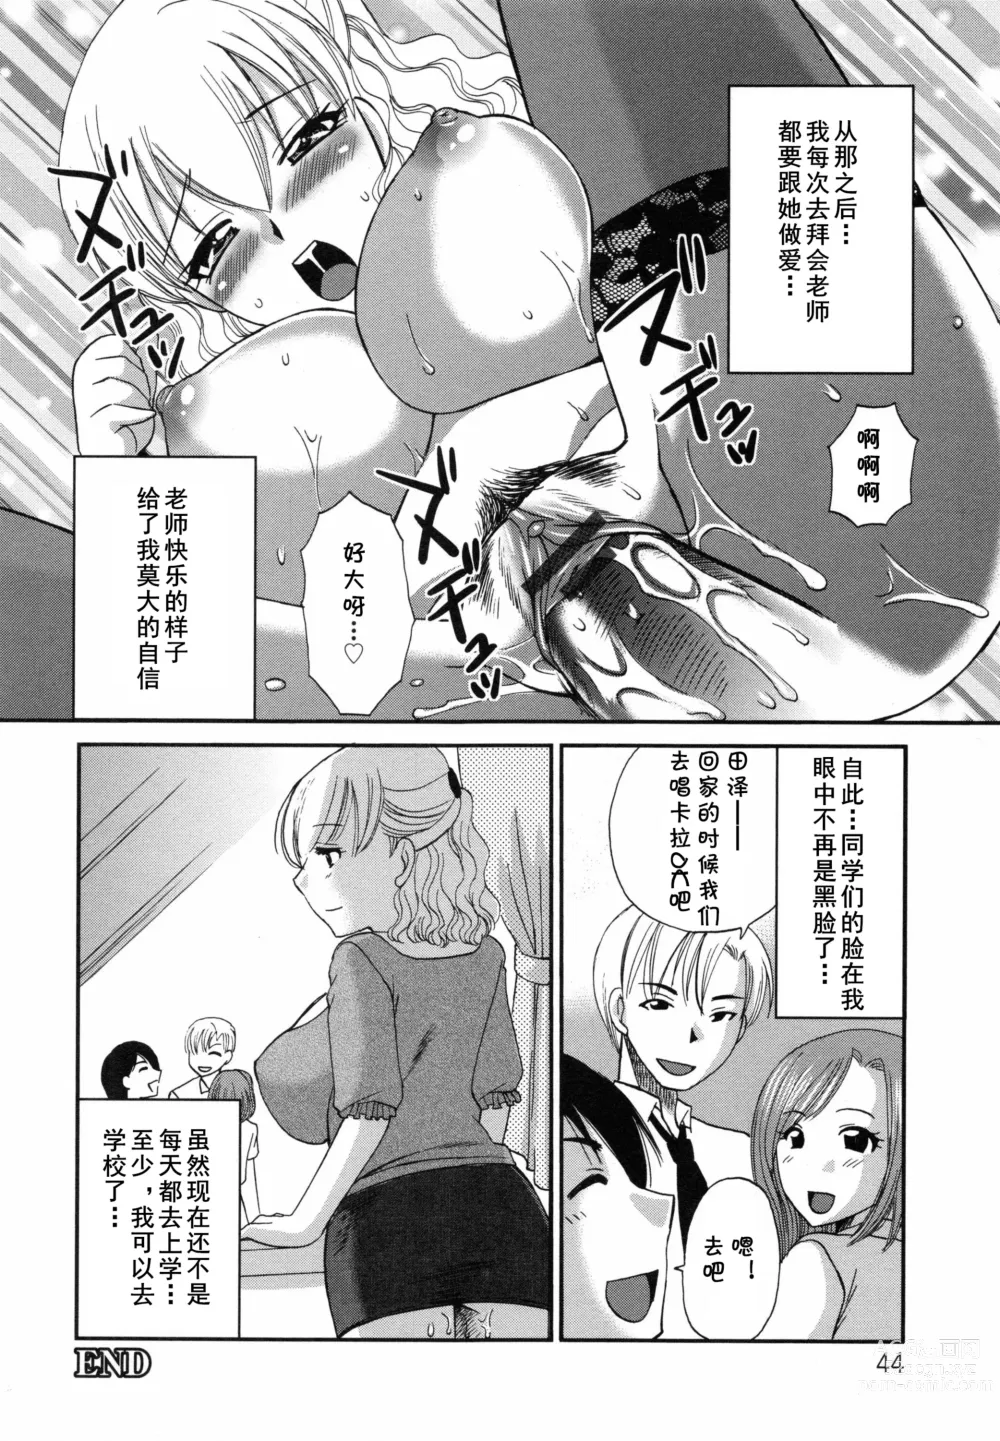 Page 20 of manga Aiyoku no Hakoniwa